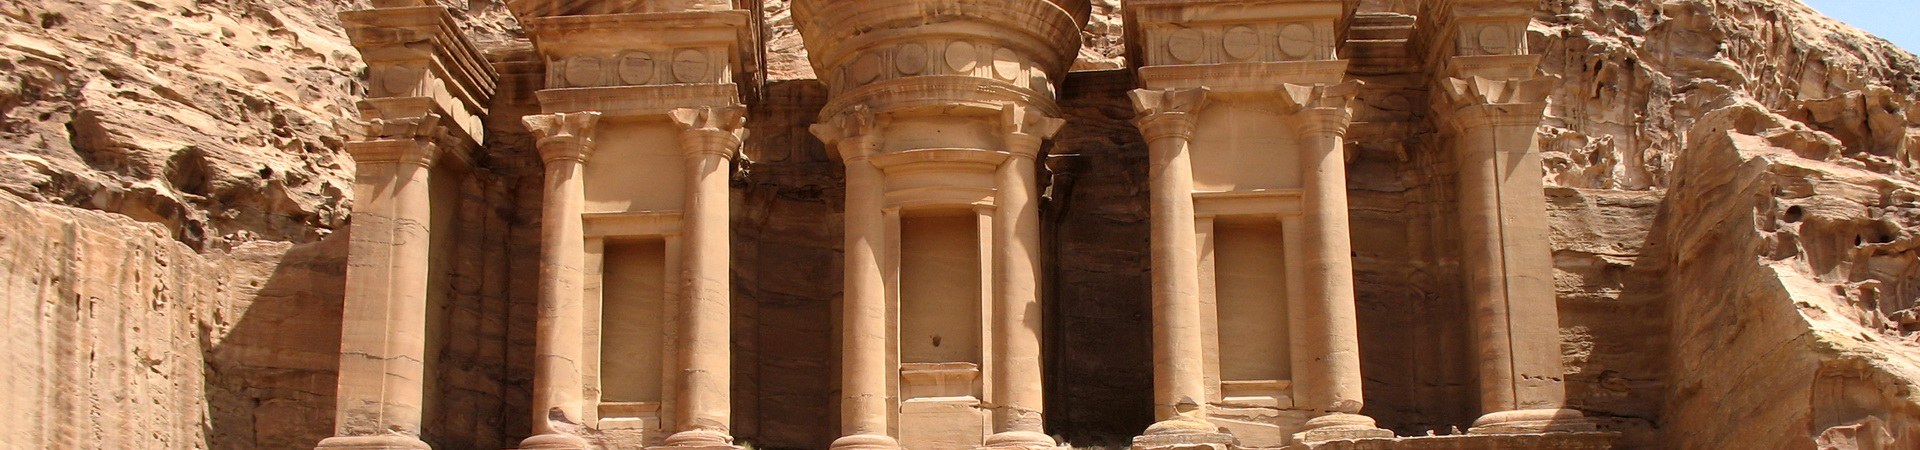 Die berühmte Felsenstadt Petra in Jordanien.